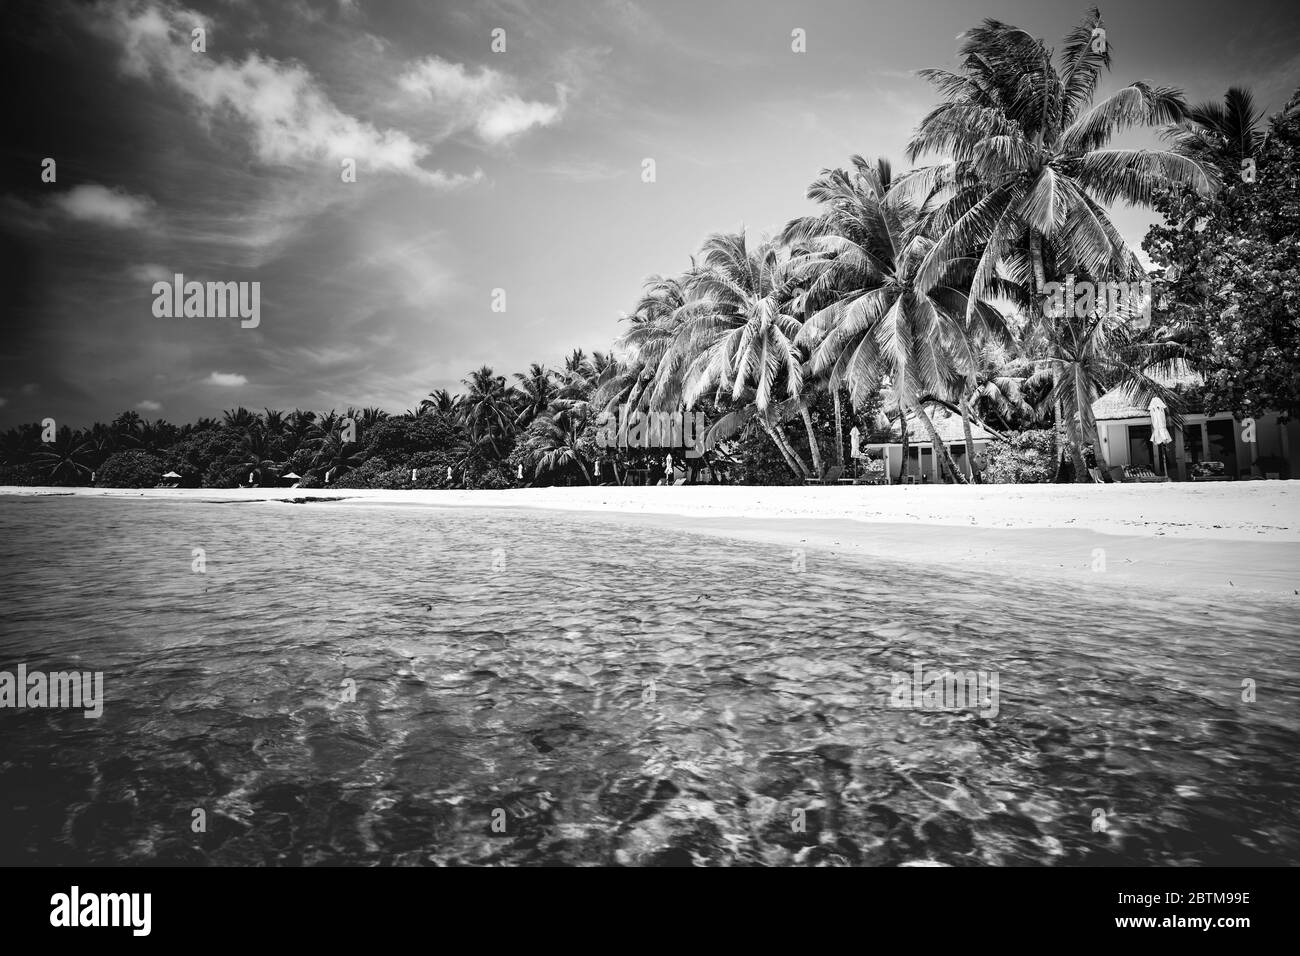 Astratto, vacanza artistica e sfondo estivo. Perfetta spiaggia in bianco e nero. Tramonto, all'alba, silhouette di palme da cocco Foto Stock